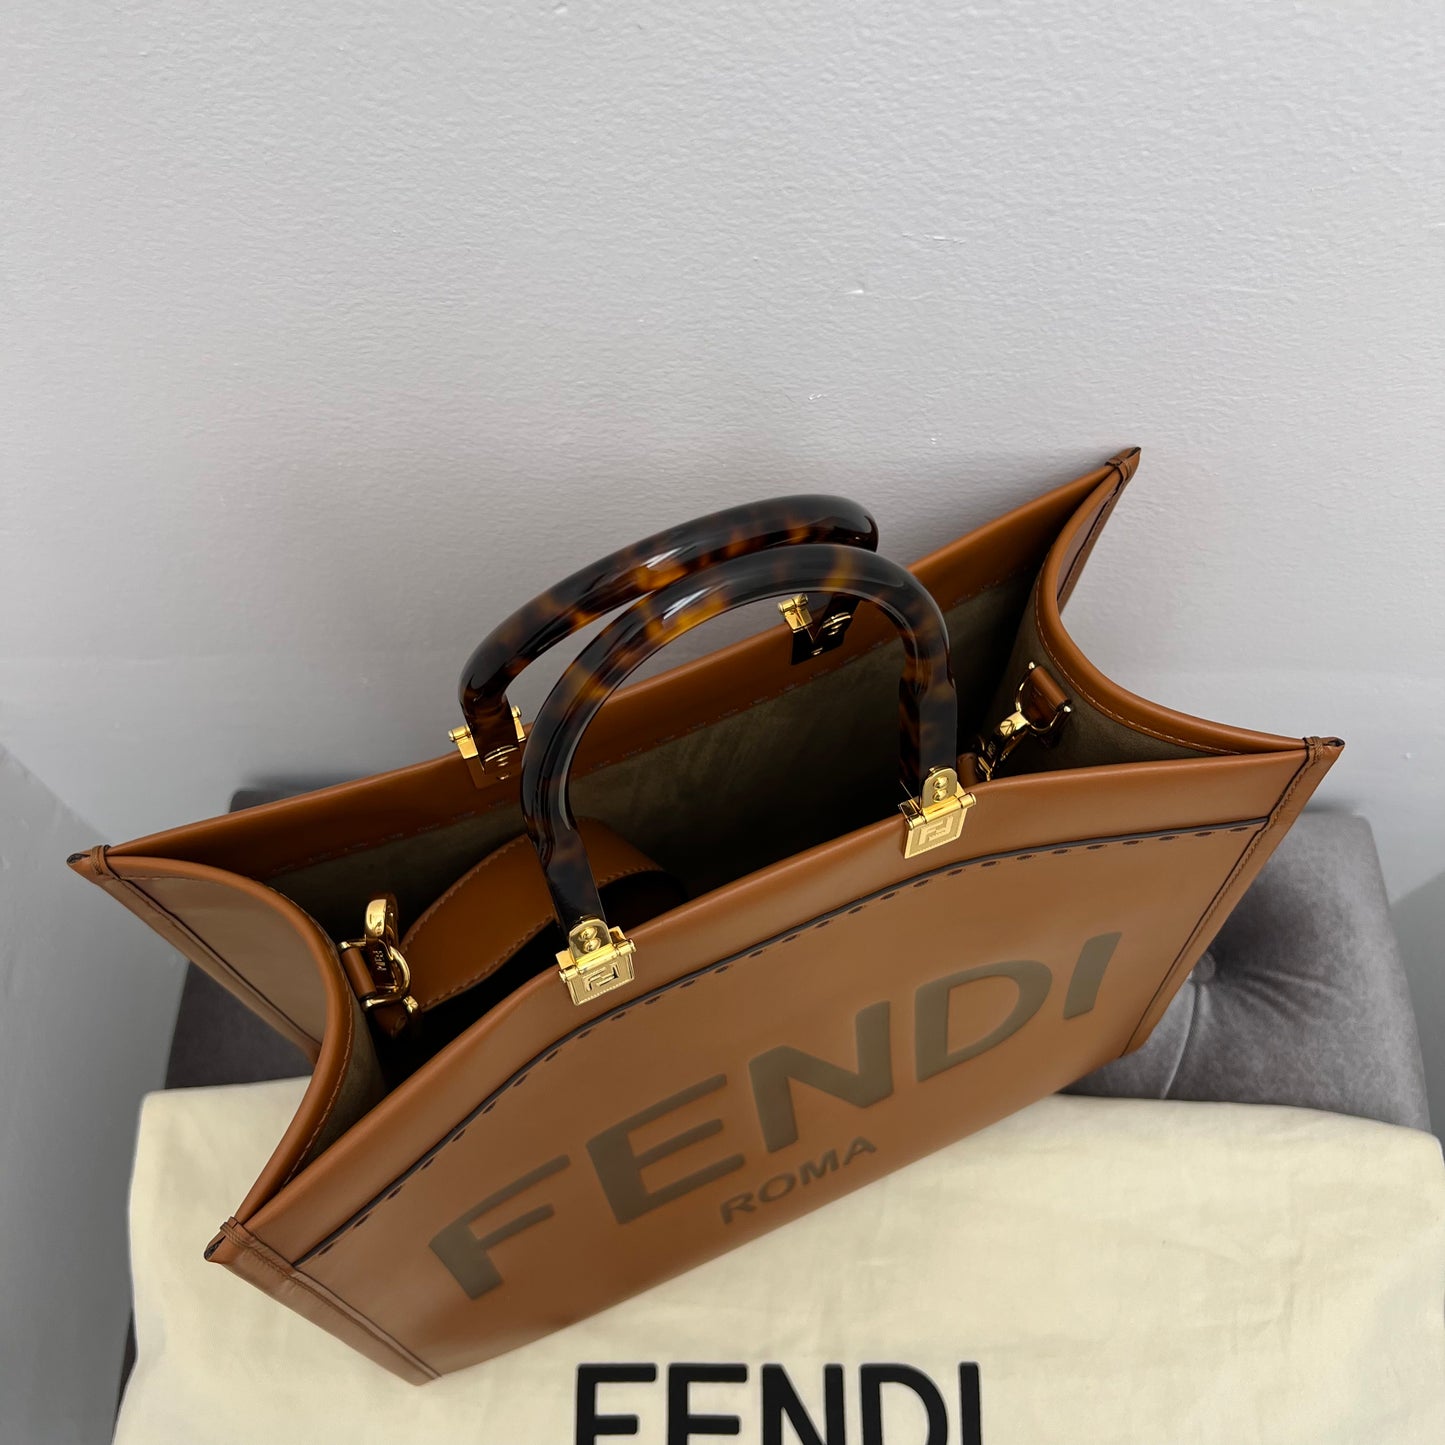 Fendi Sunshine Medium Shopper Tote